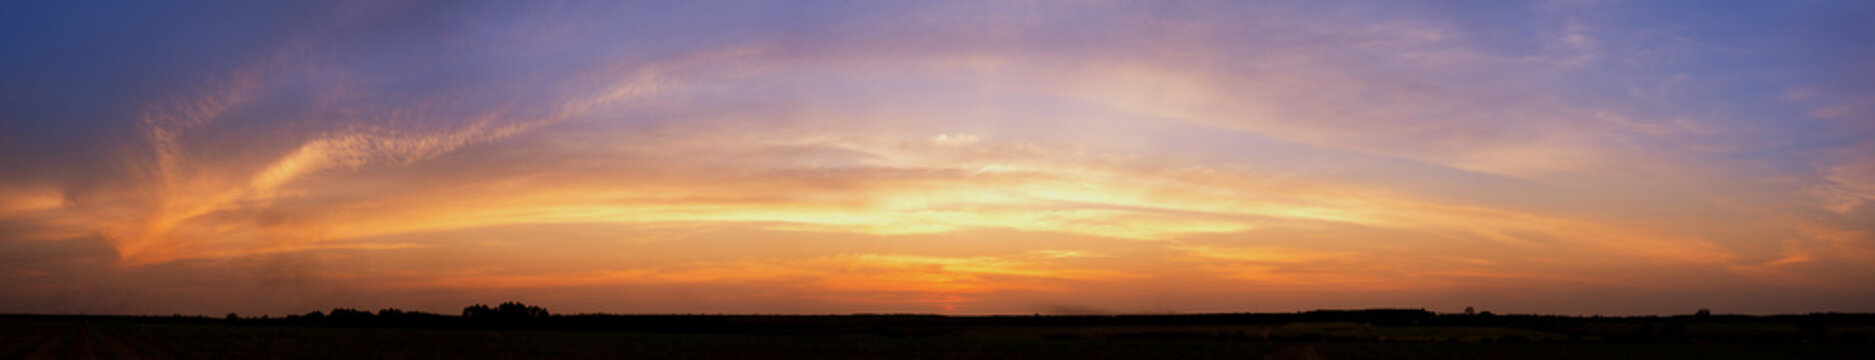 sunset sky Beautiful sky golden hour,panorama shot